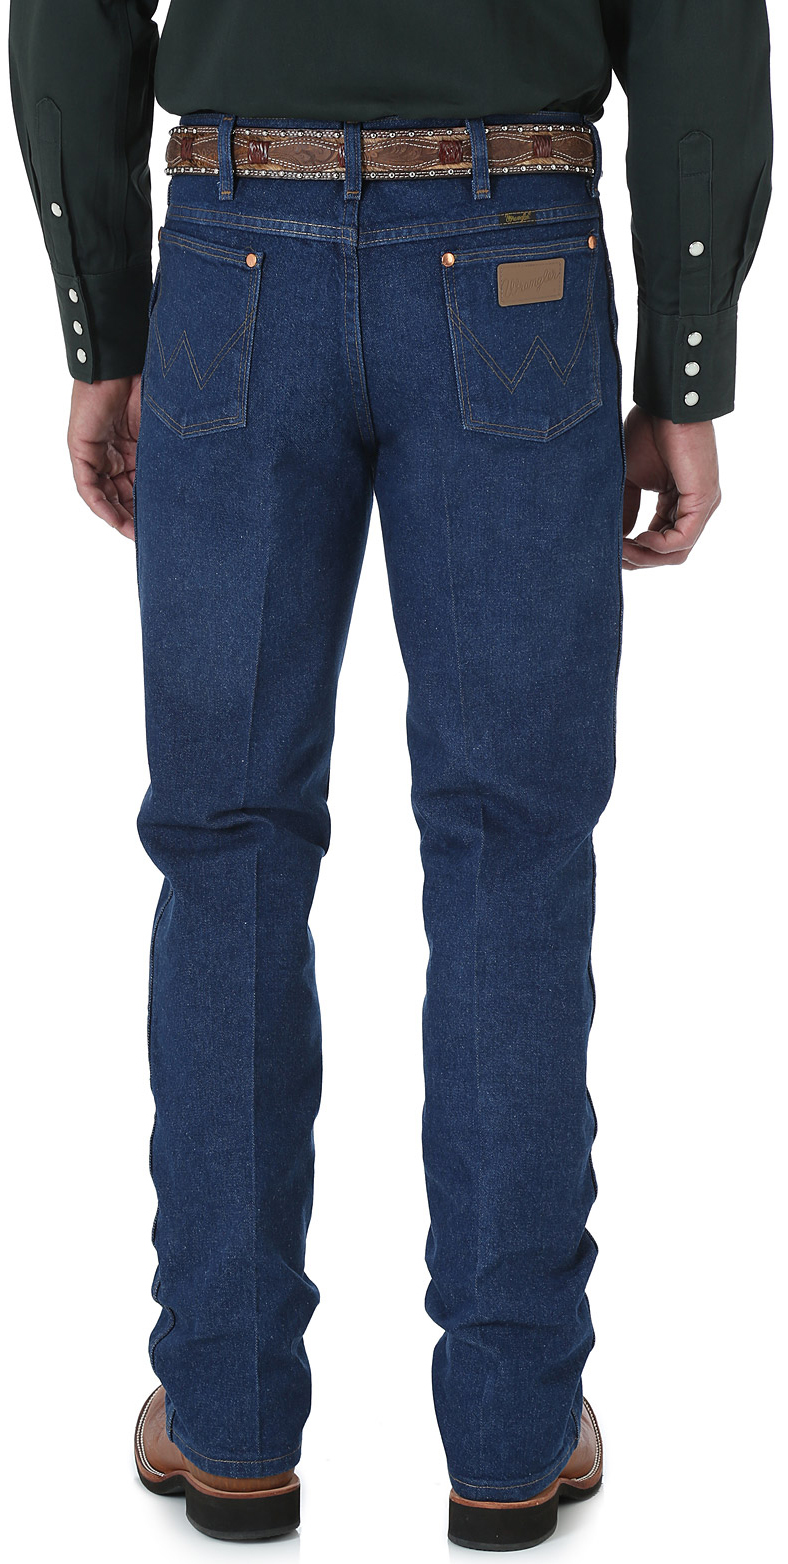 Wrangler Cowboy Cut Slim Fit Jeans